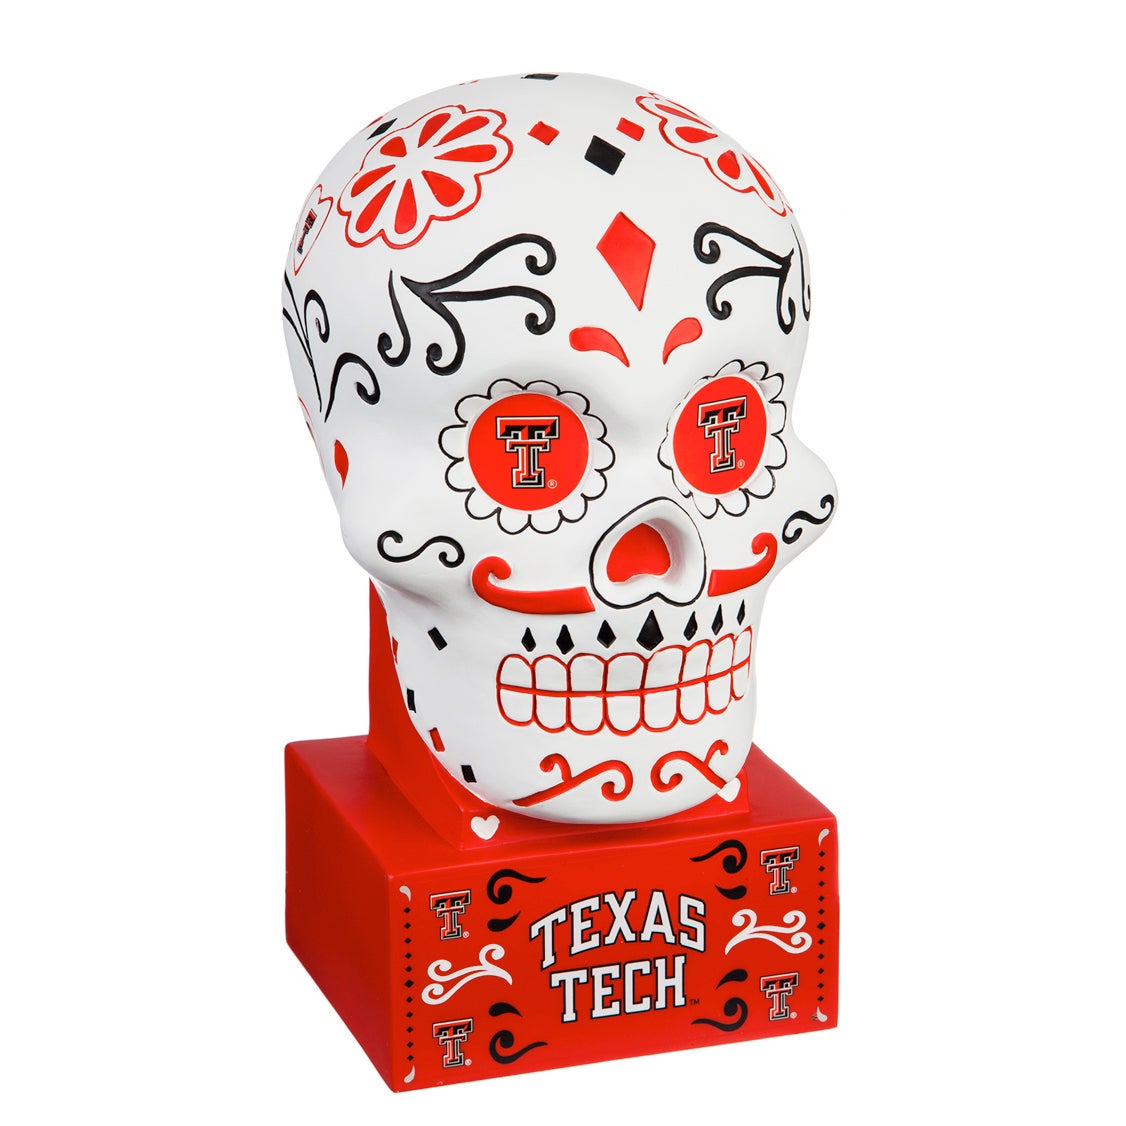 Texas Tech Sugar Skull Statue